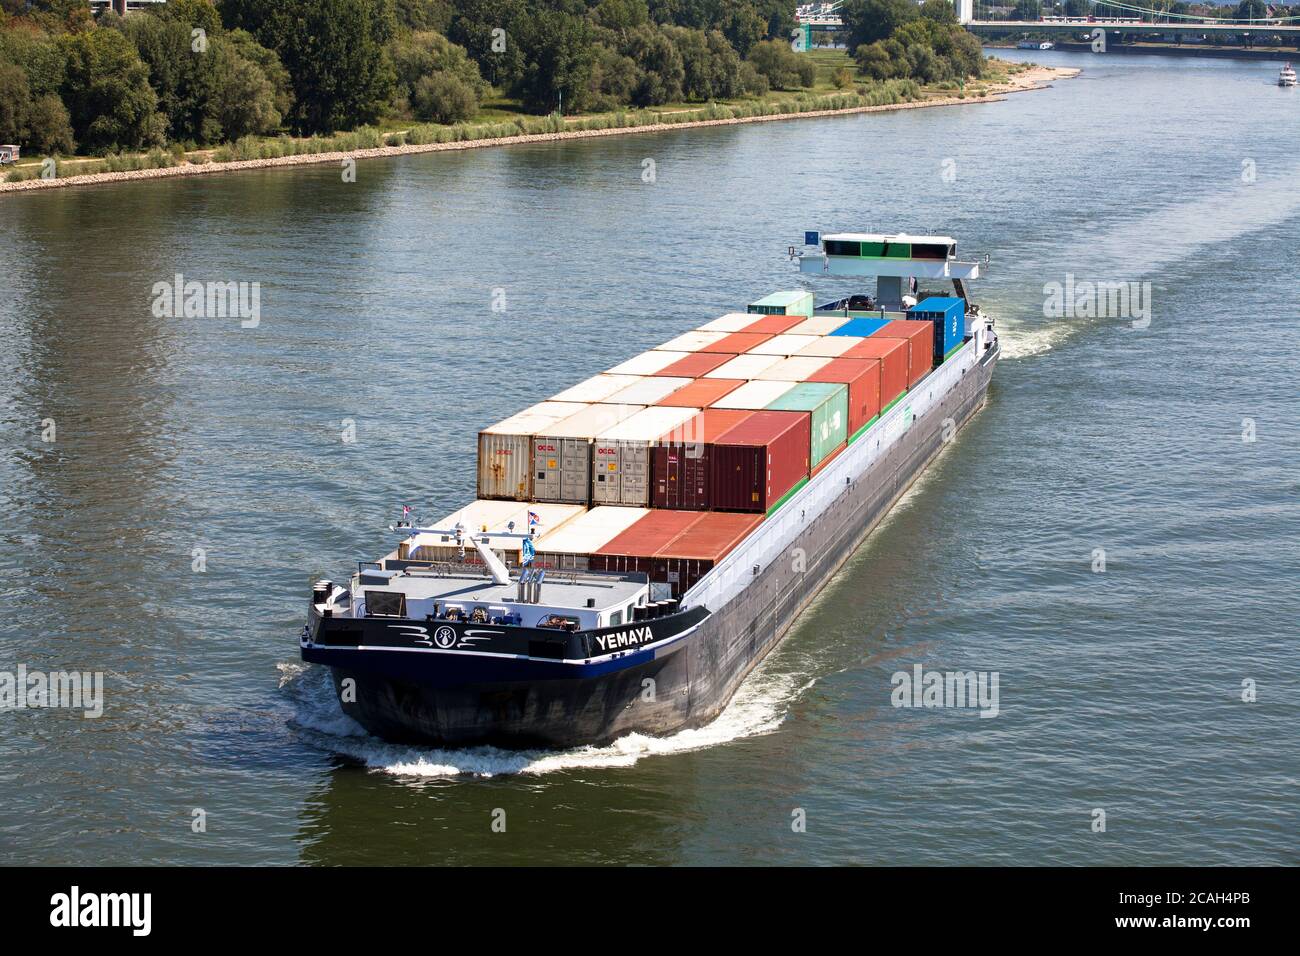 Ein Containerschiff auf dem Rhein, Köln, Deutschland. Ein Containerschiff auf dem Rhein, Köln, Deutschland. Stockfoto